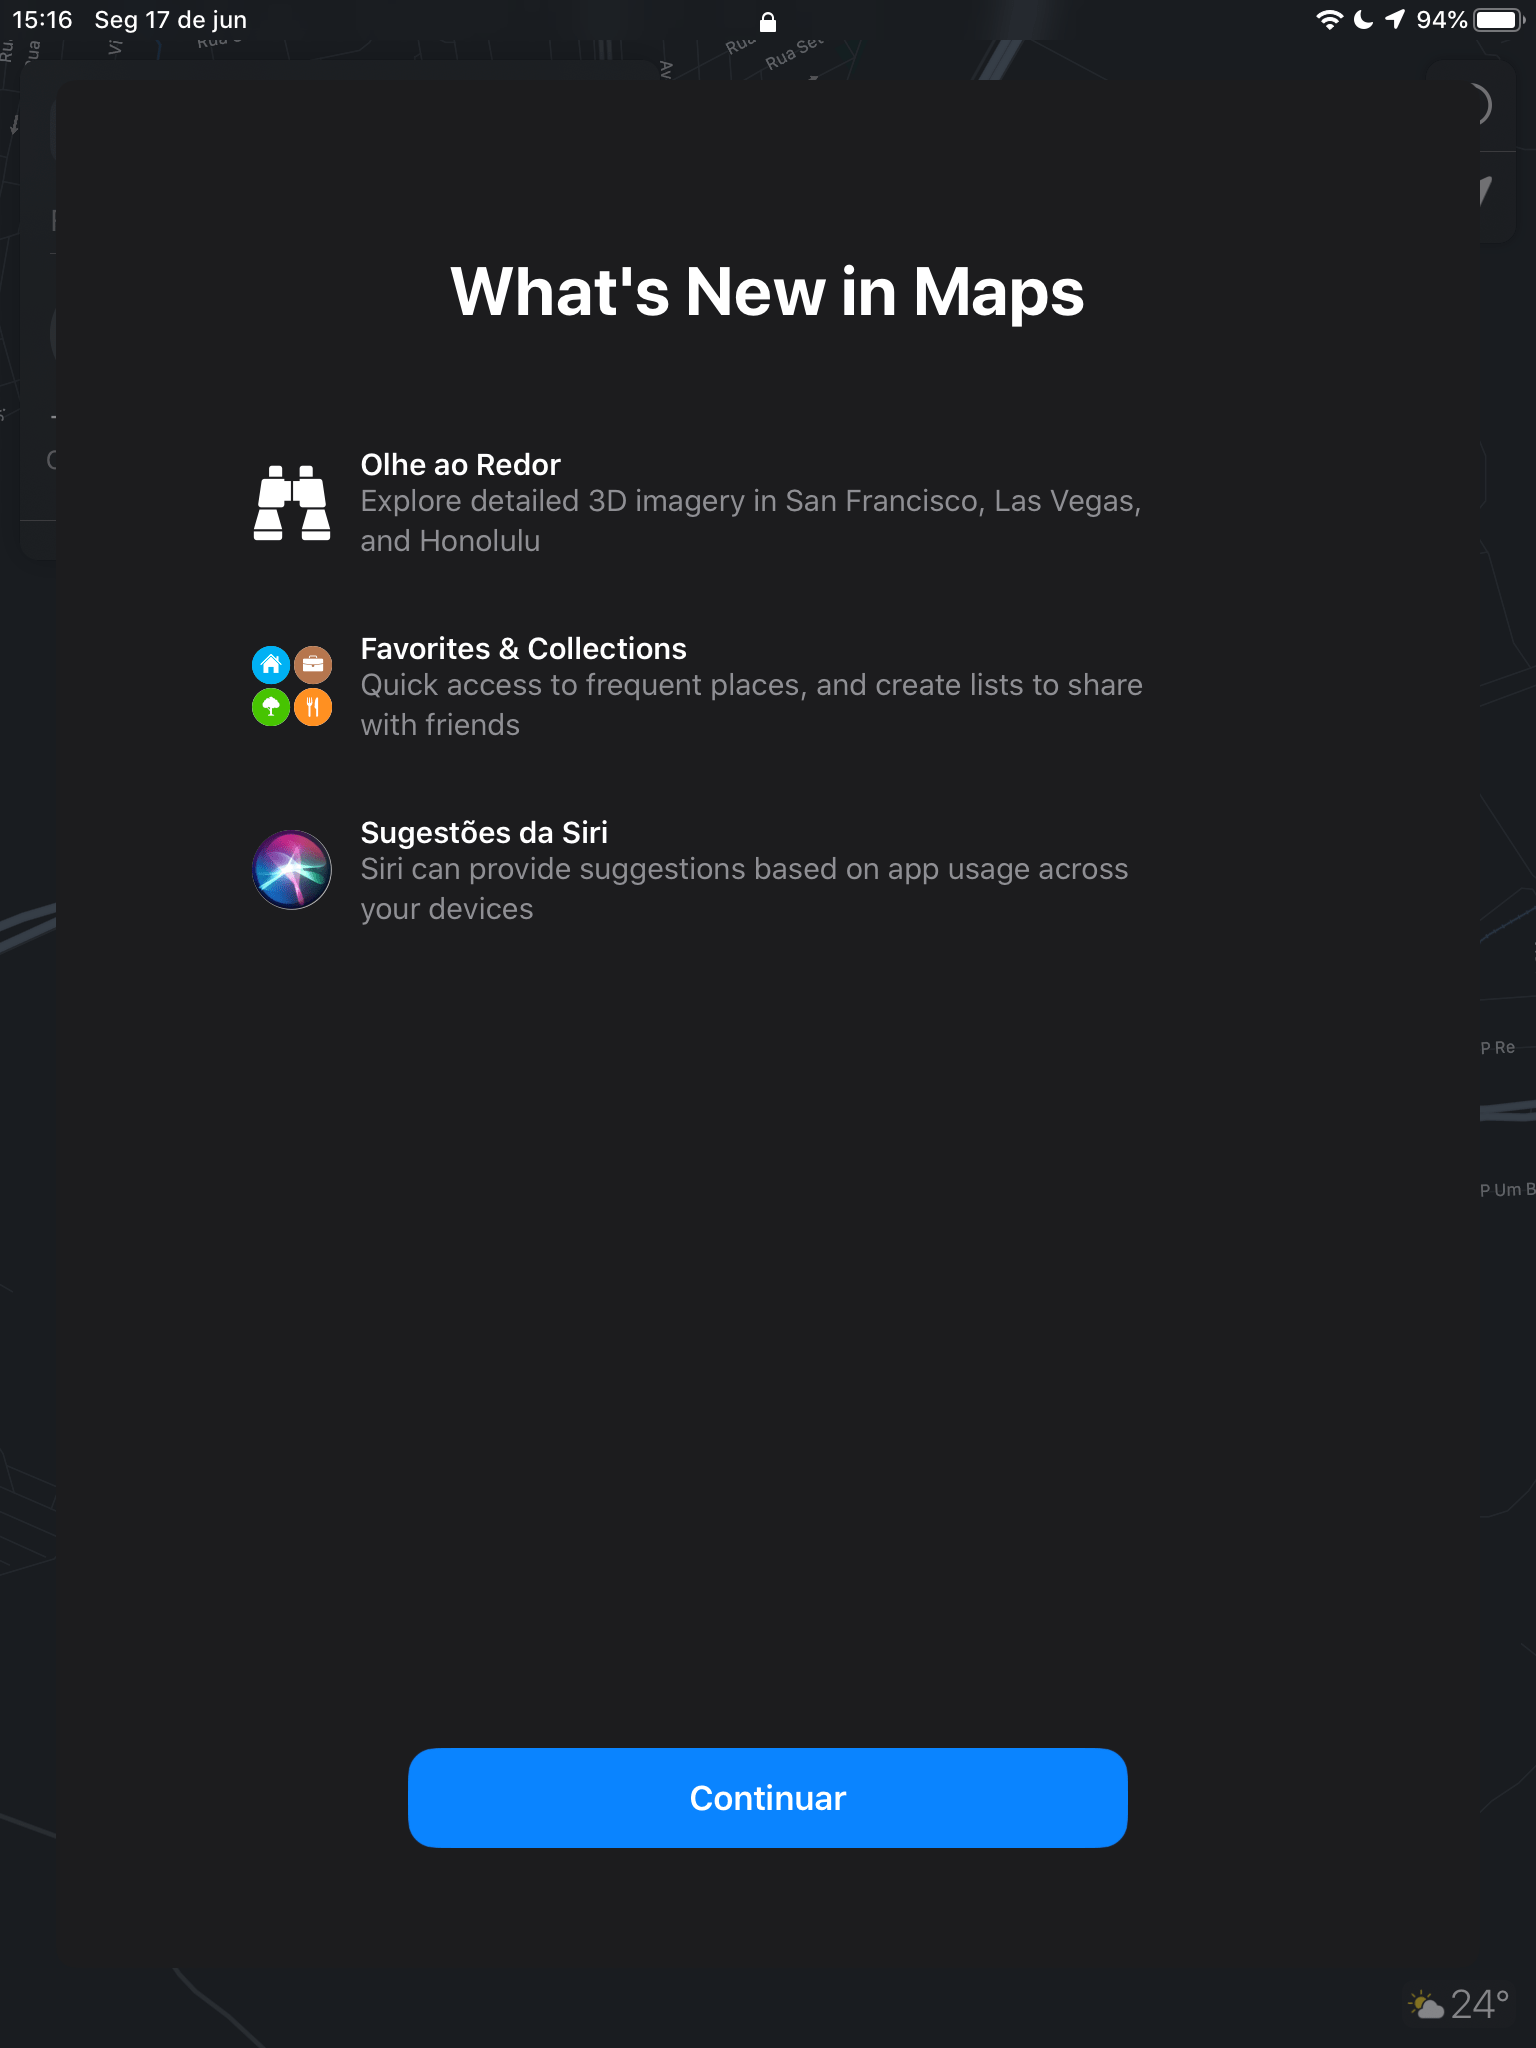 Olhe ao Redor no Apple Maps